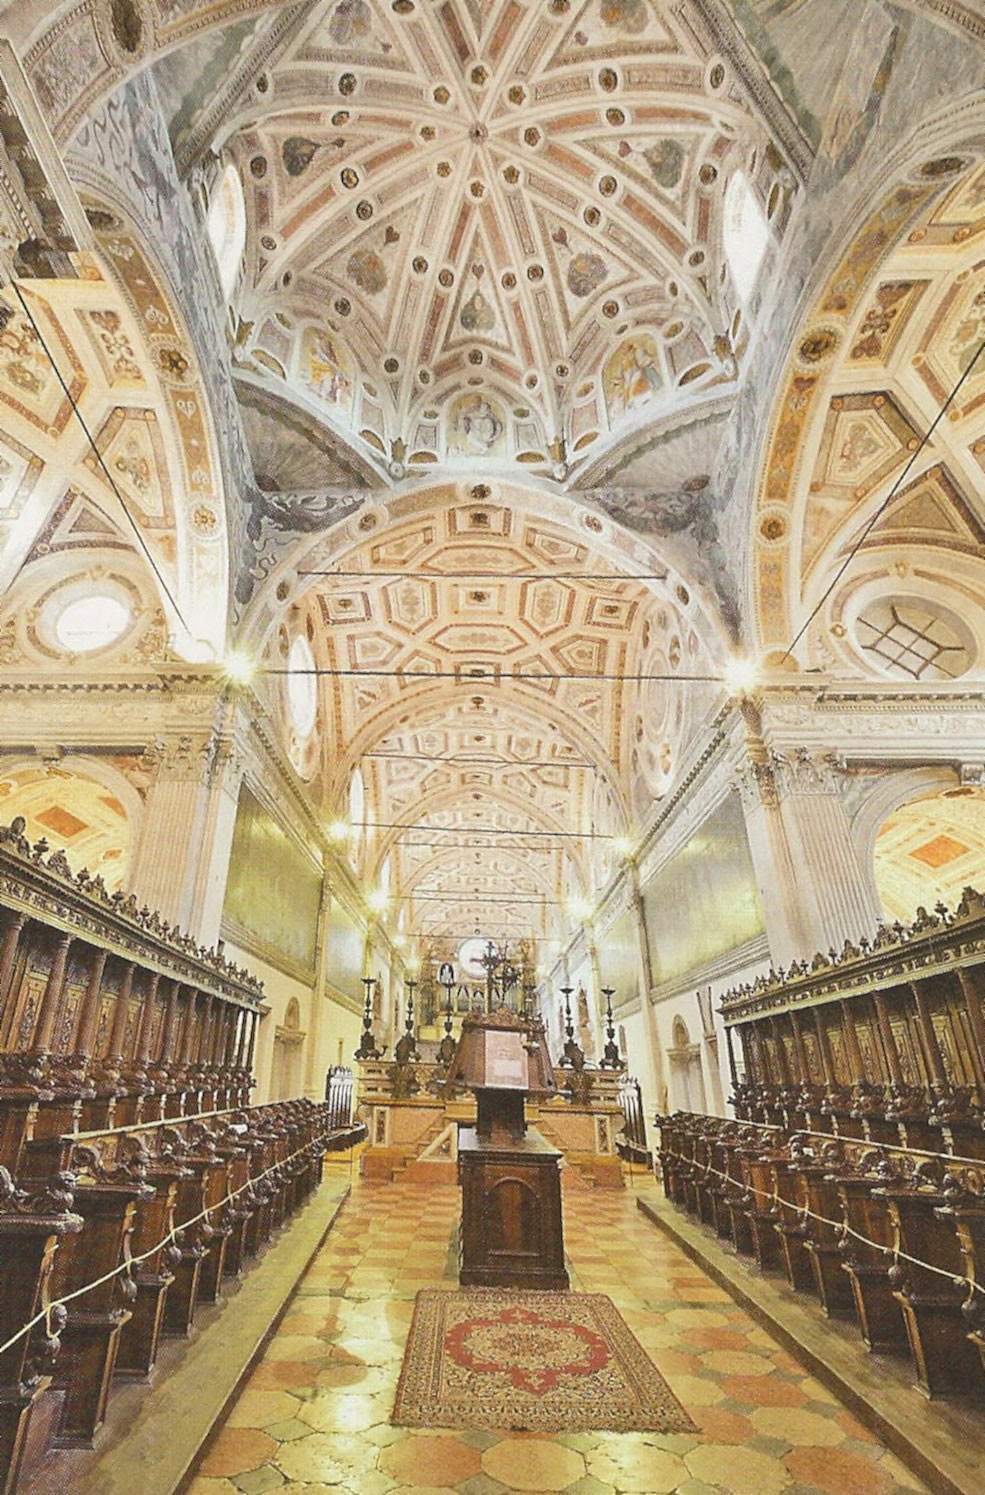 Il coro dei monaci dietro all'altar maggiore. Si osservi in alto la decorazione manierista delle volte.
